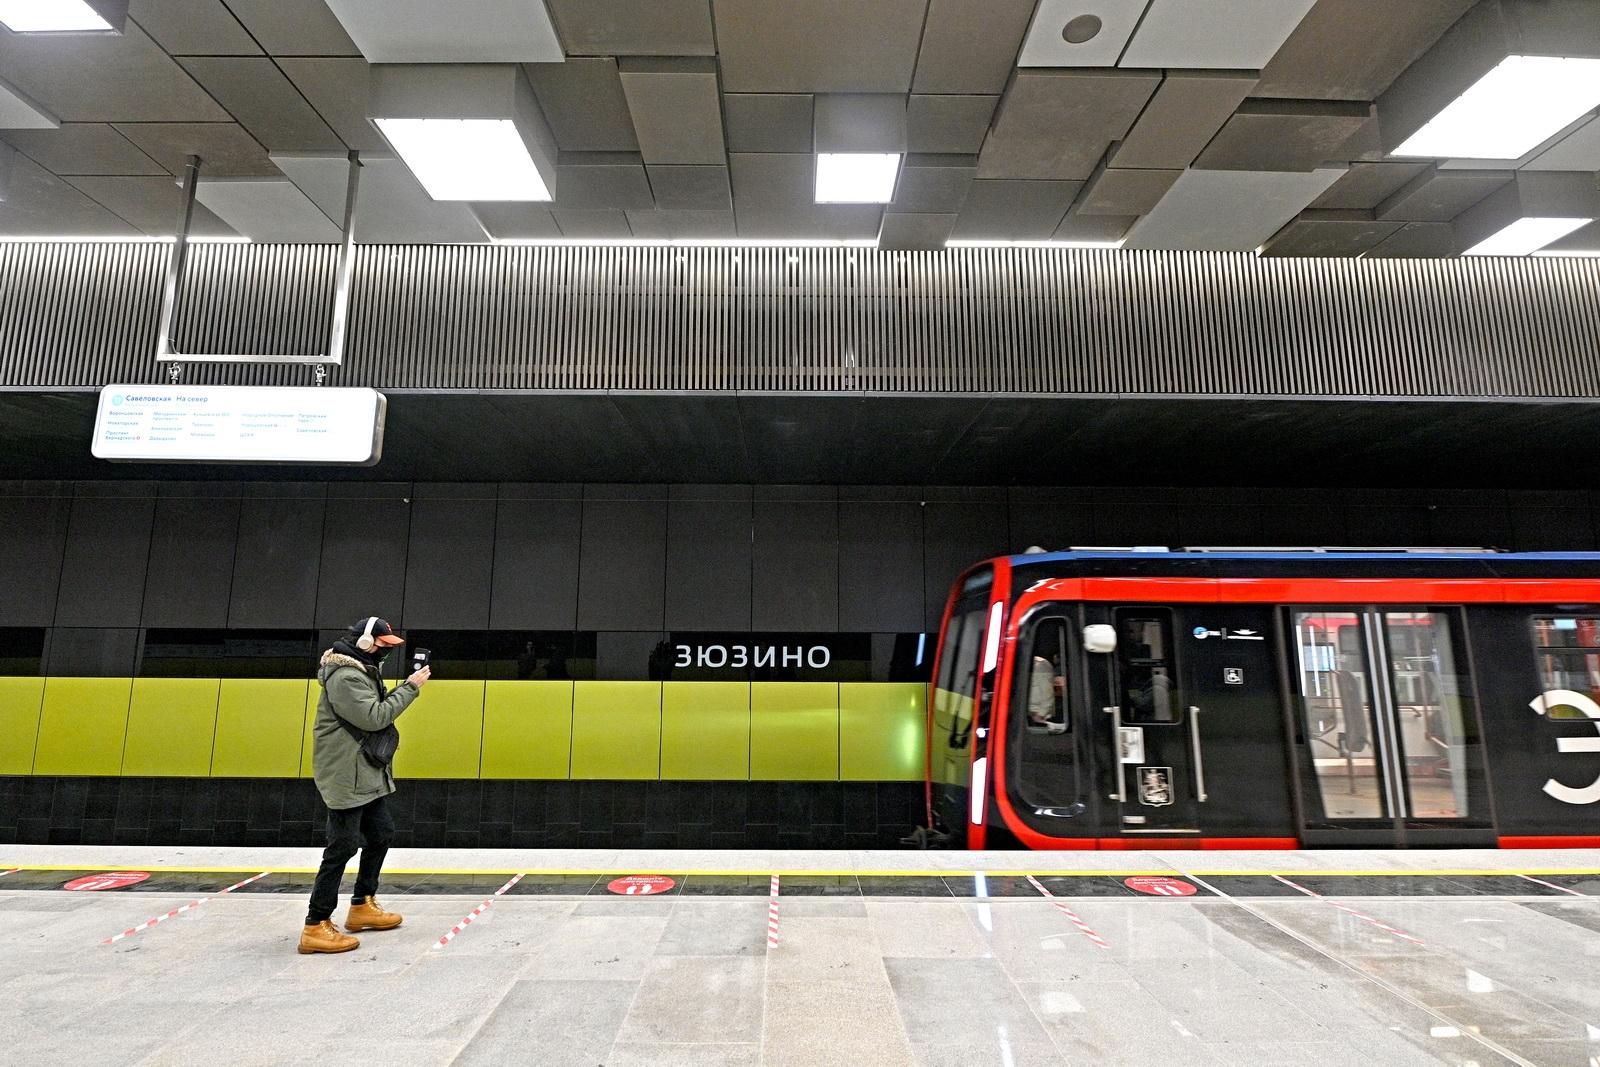 27 станций метро планируется открыть в Москве к 2025 году